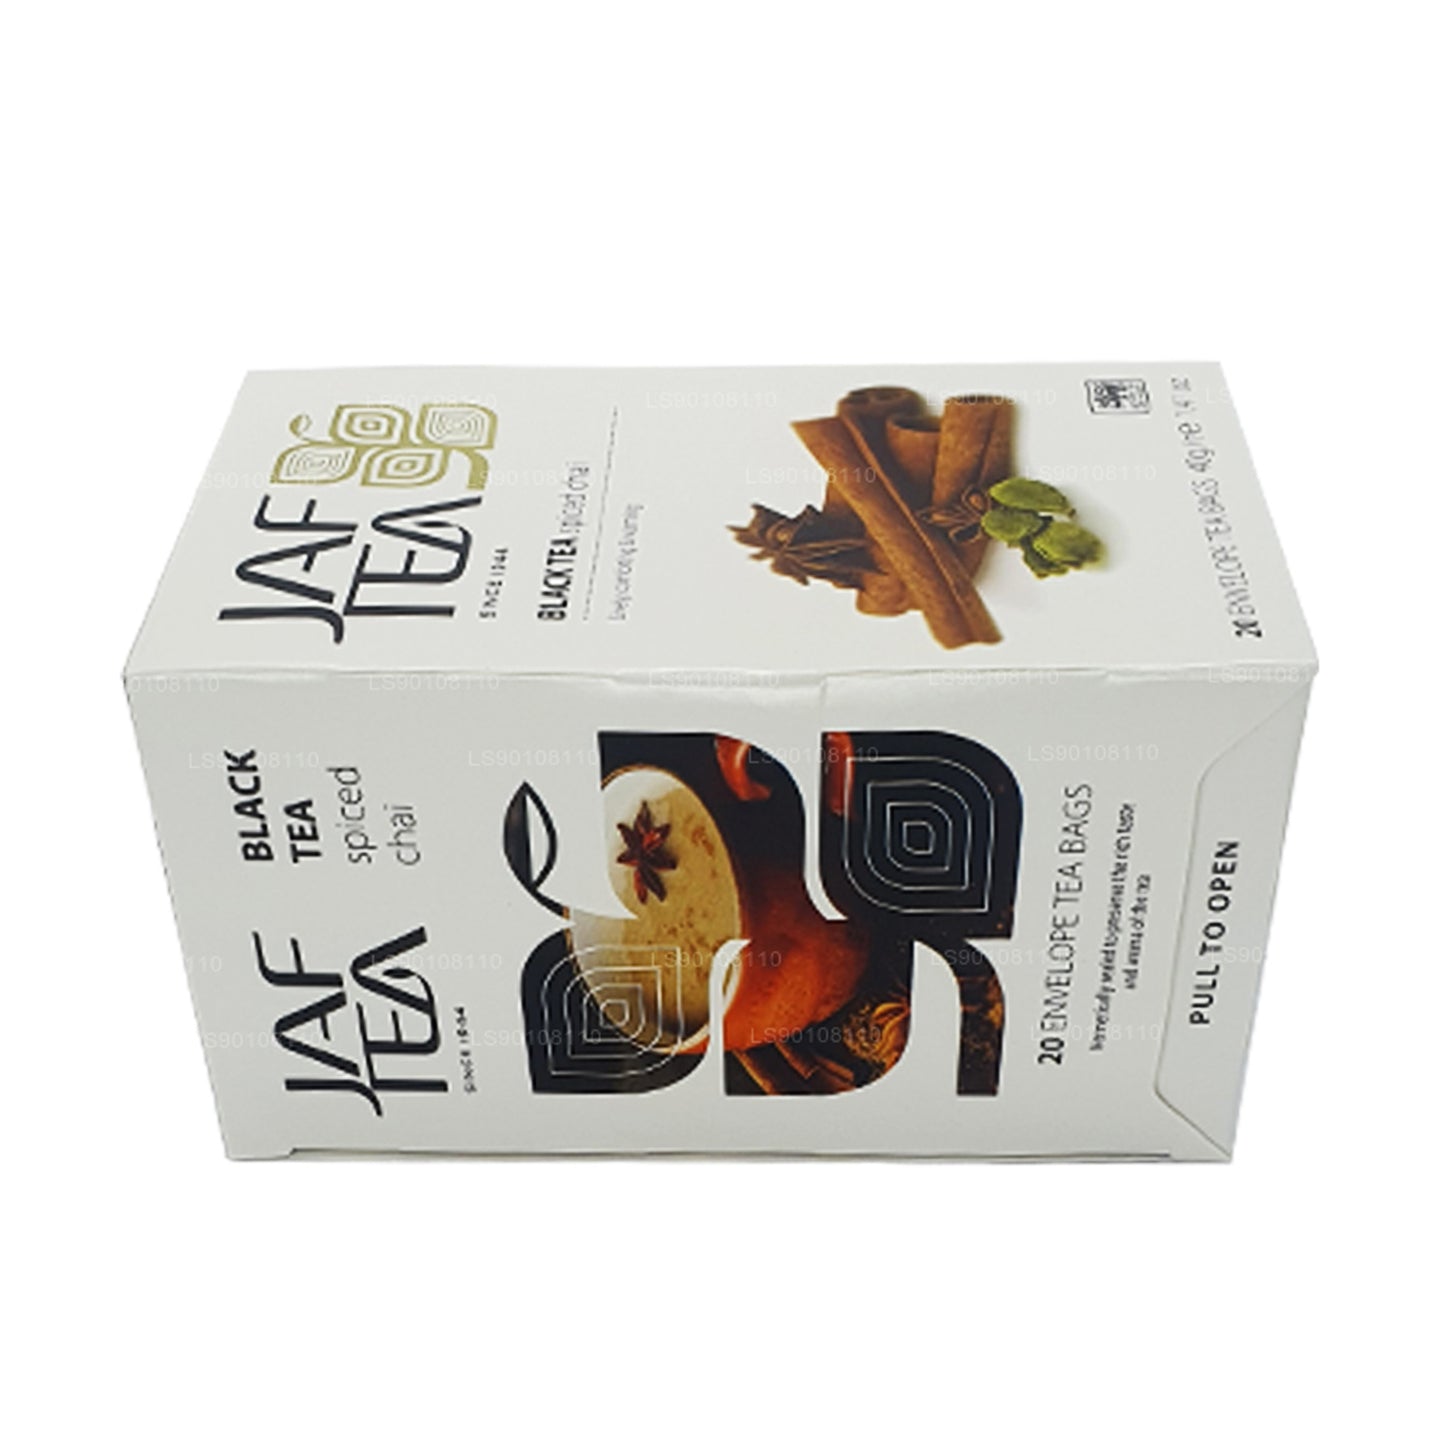 شاي أسود متبل من مجموعة جاف تي بيور سبايس (40 جم) 20 كيس شاي